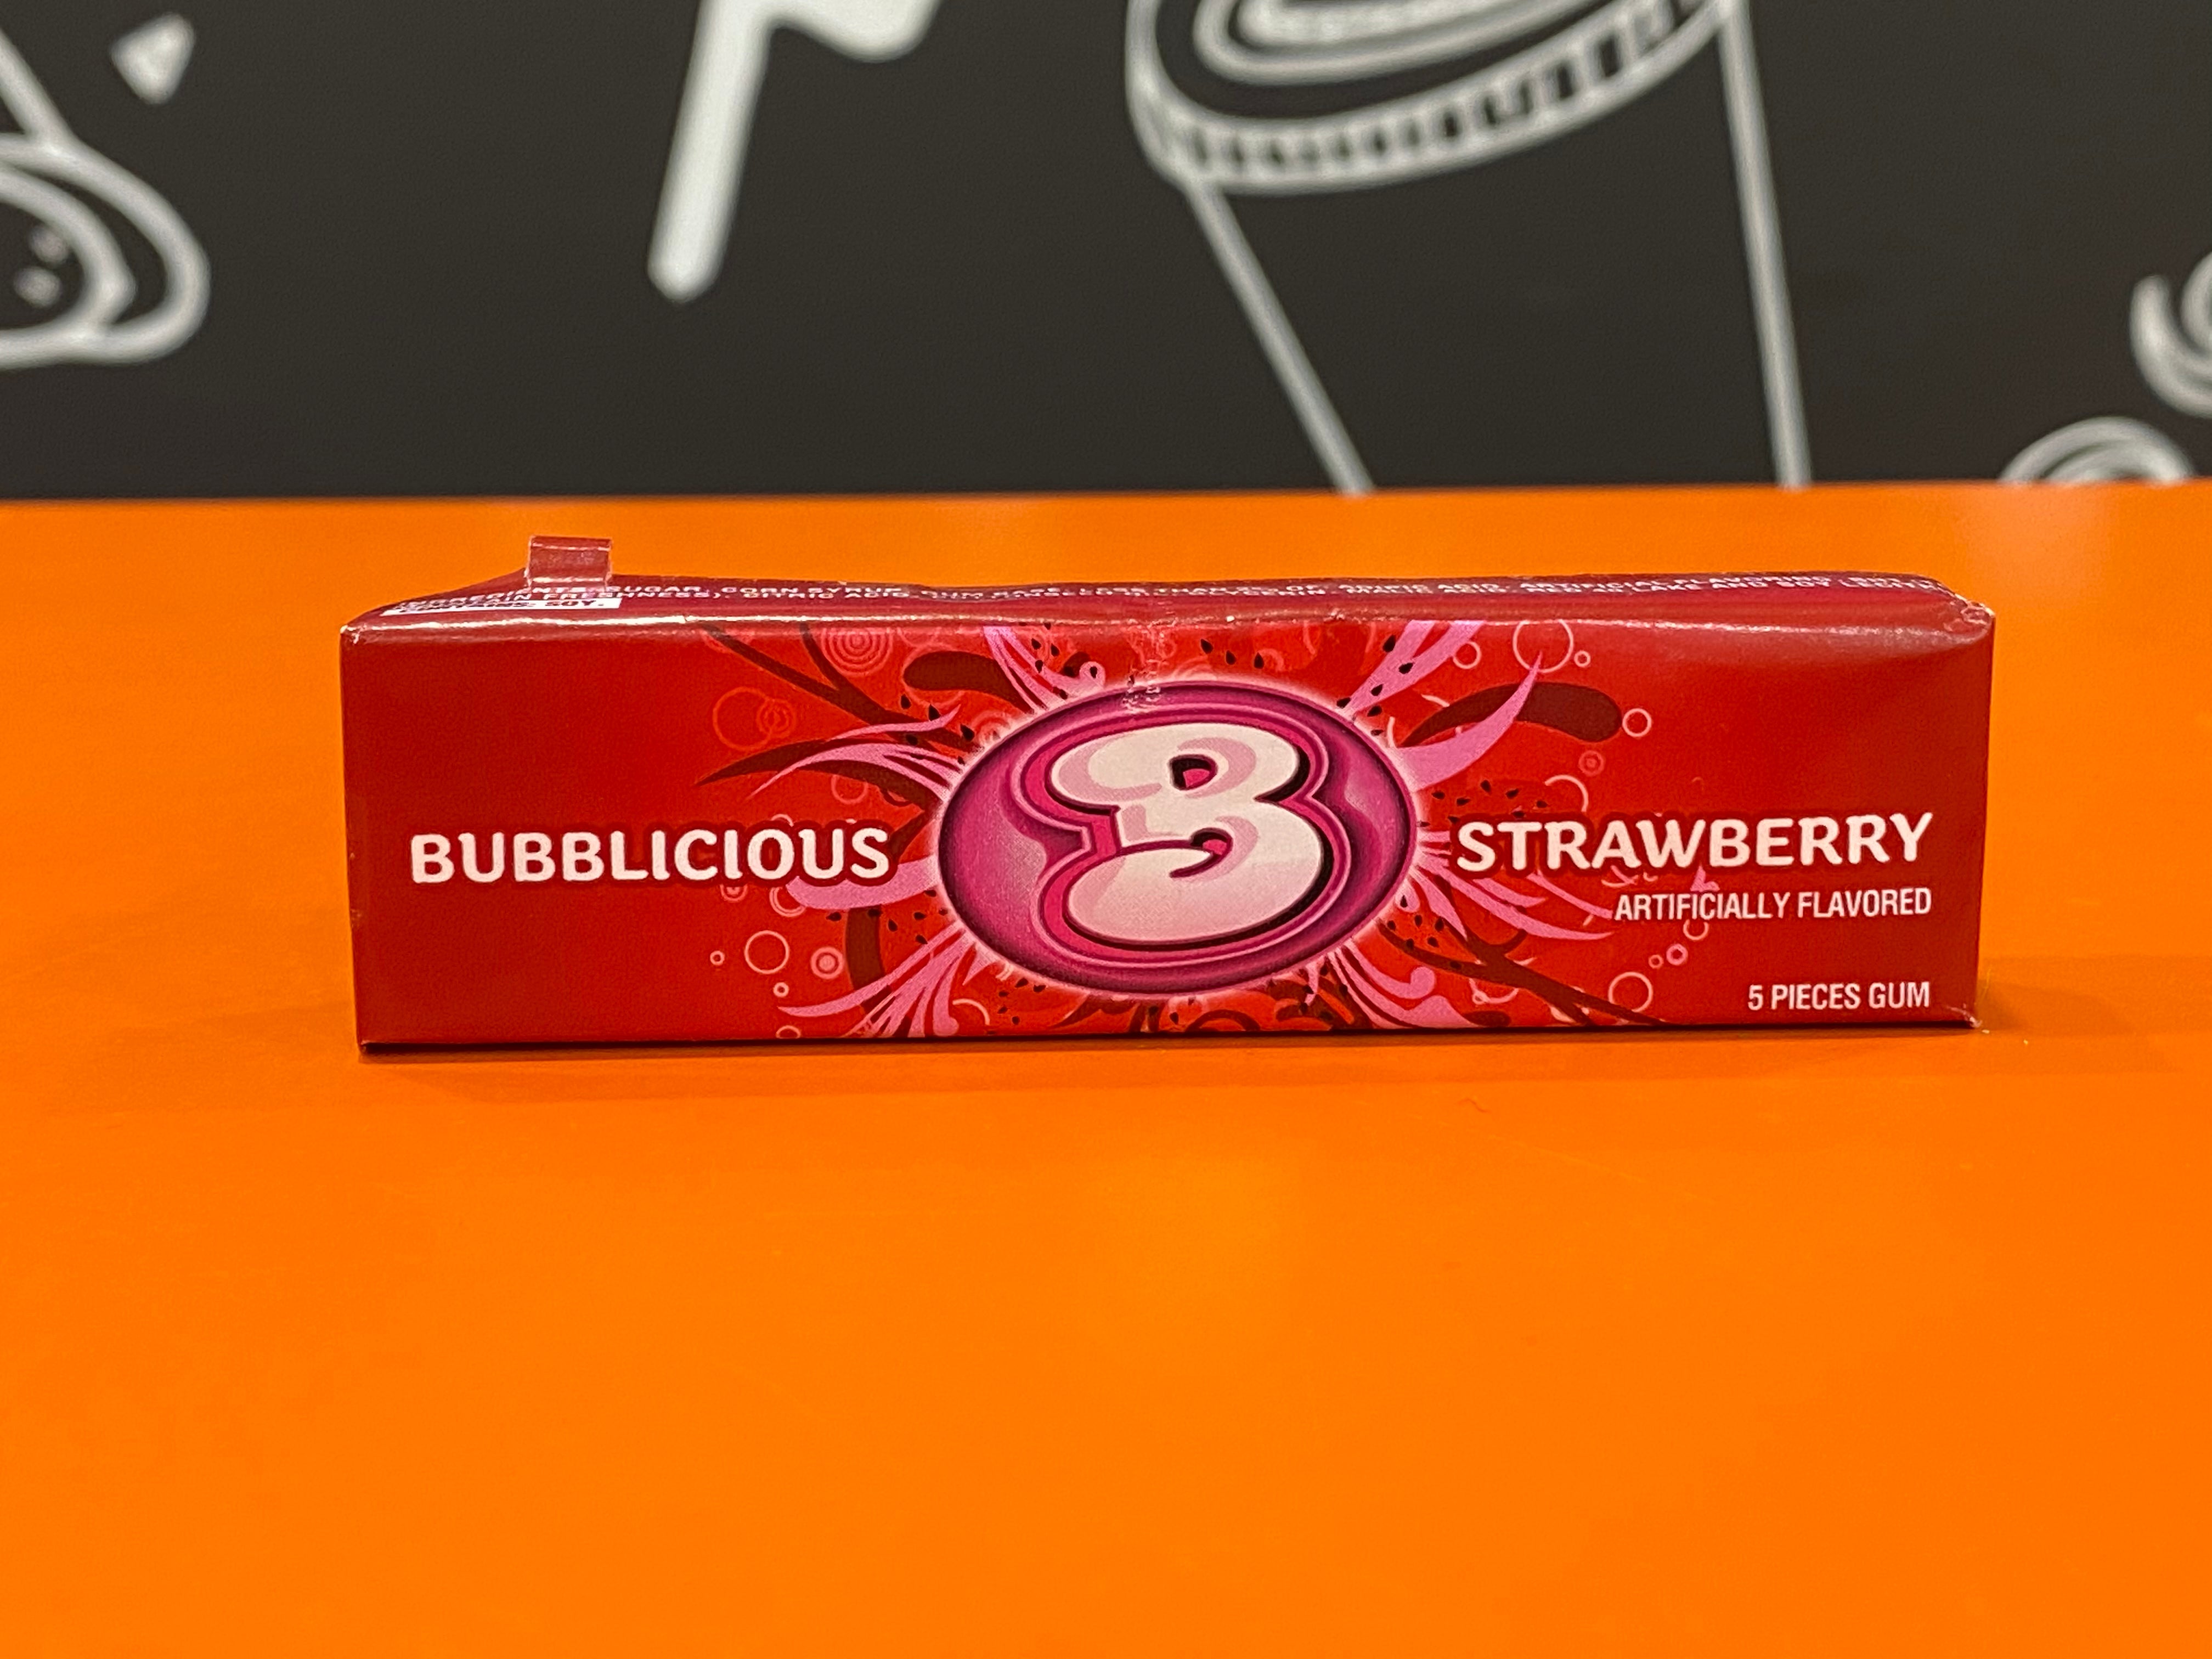 Bubblicious Strawberry